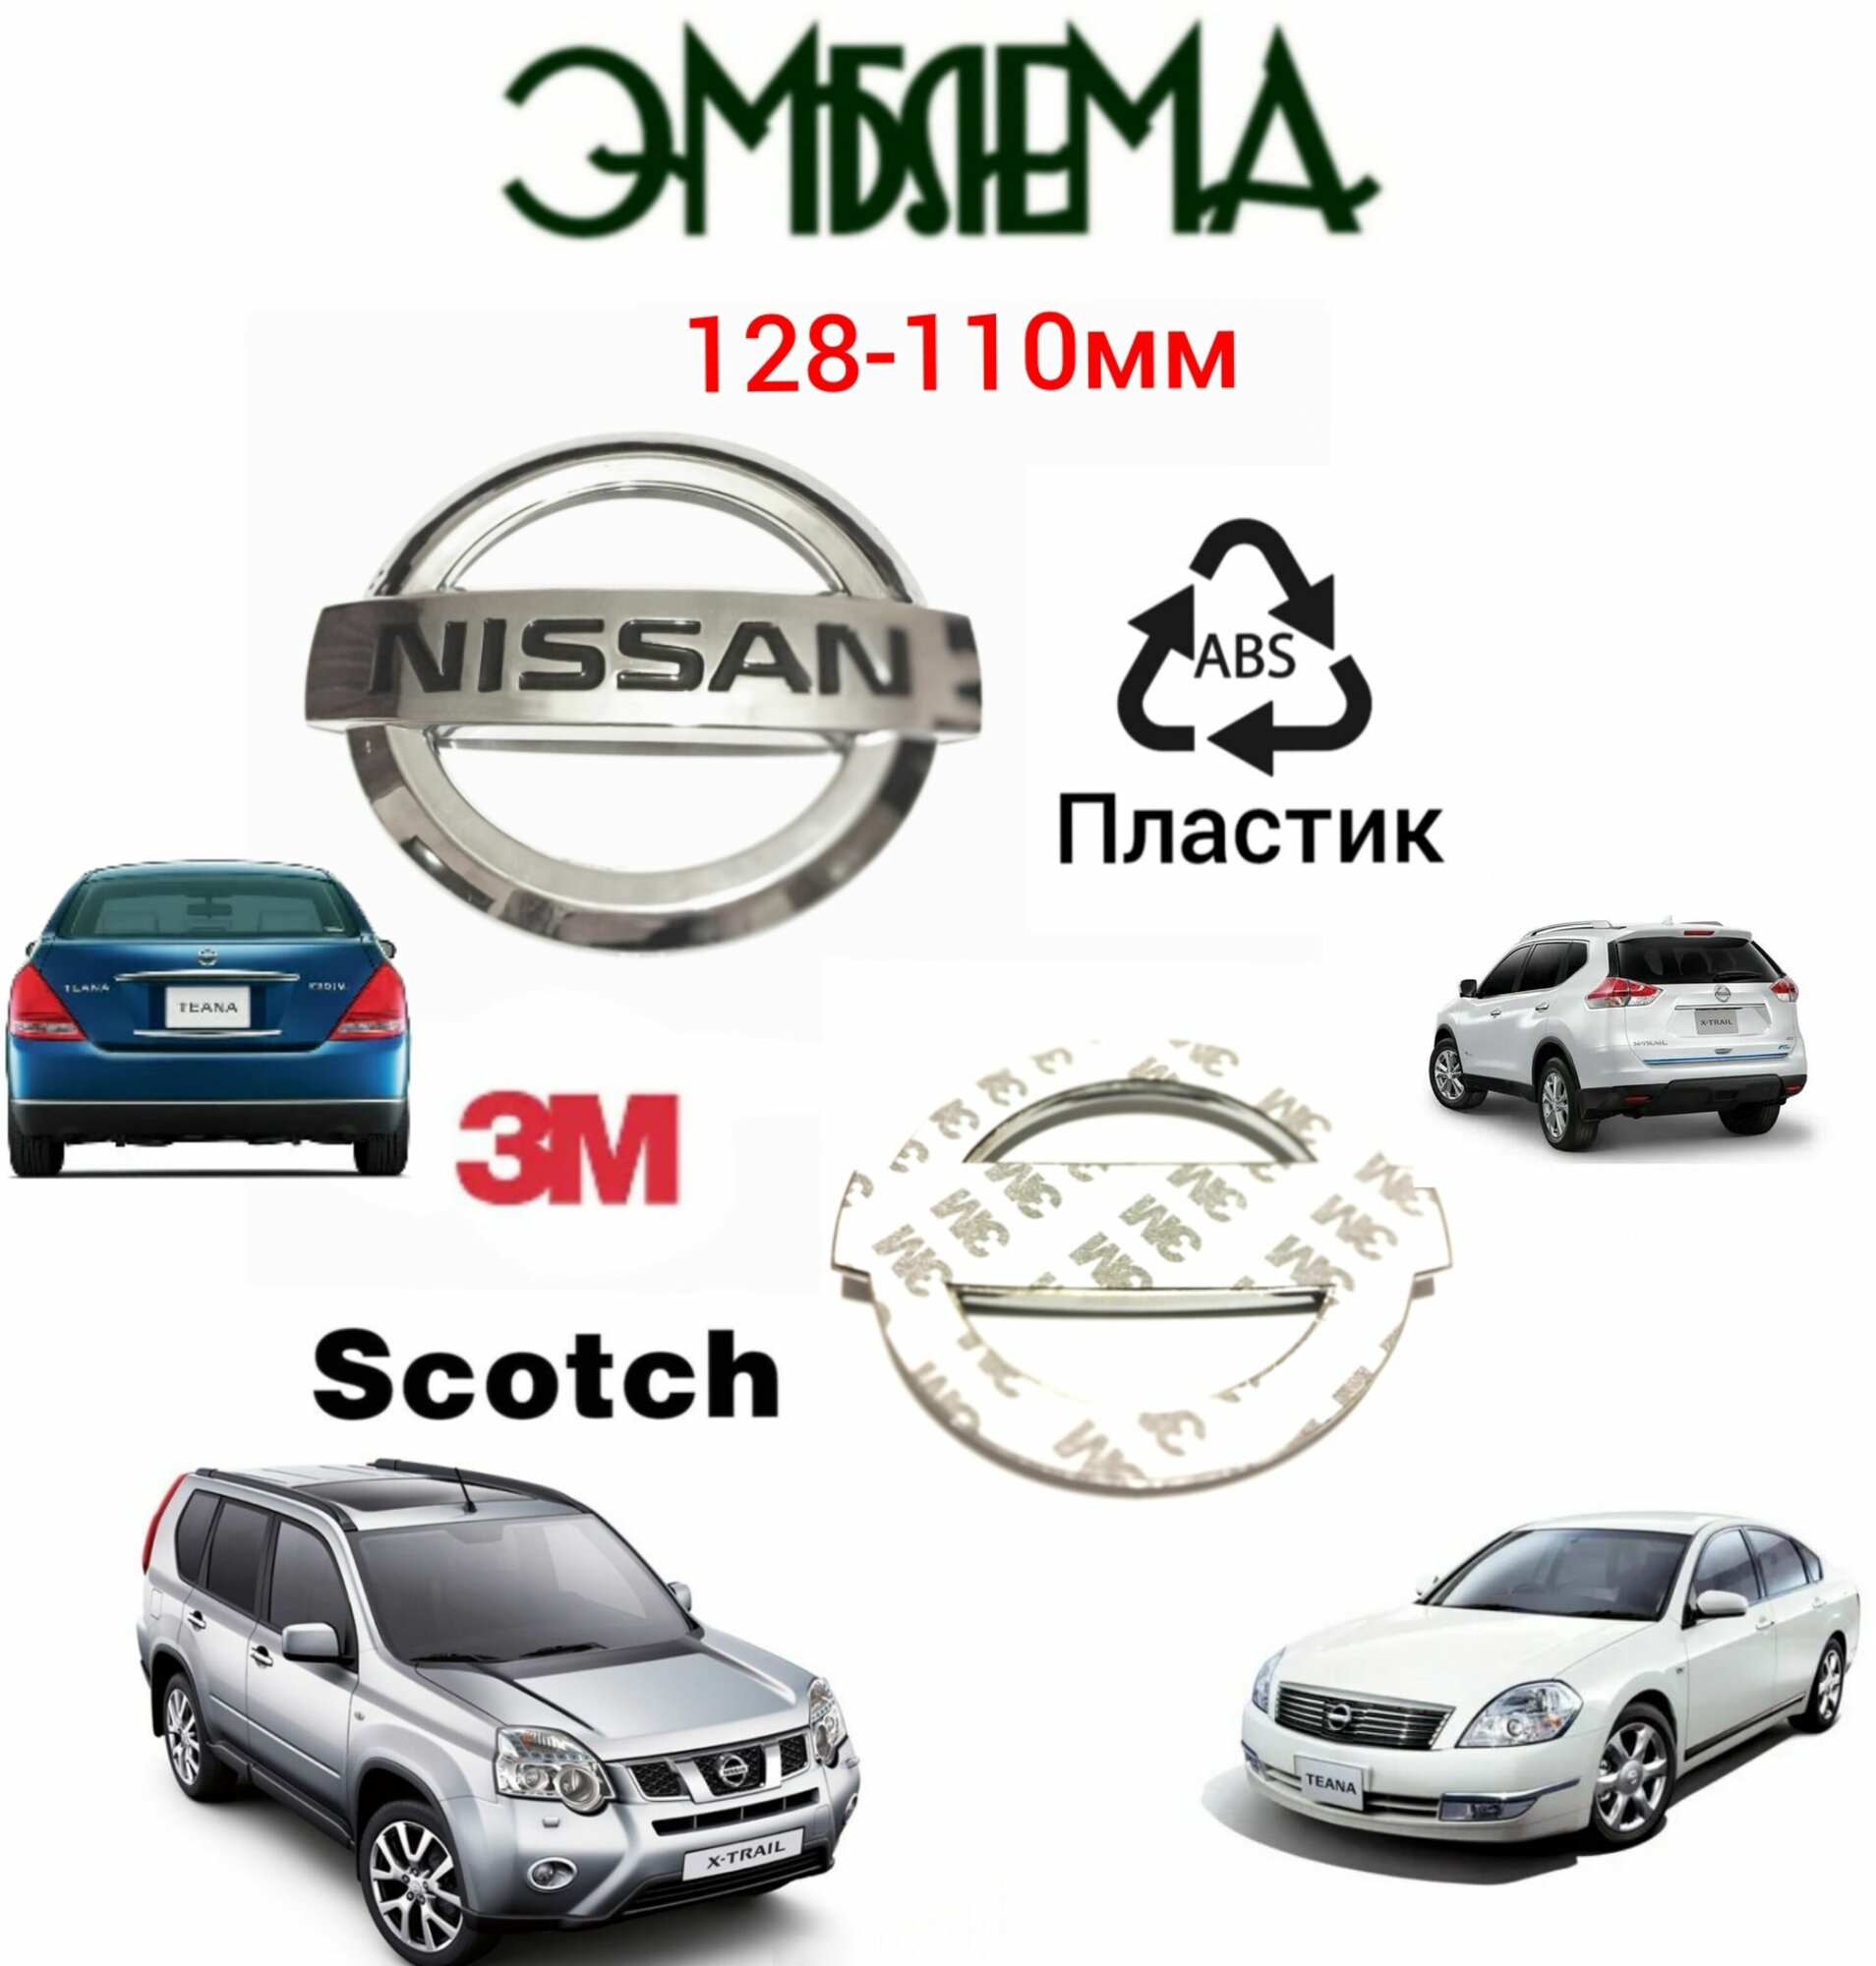 Эмблема ( орнамент шильдик) на капот и крышку багажника для автомобиля Ниссан Nissan 128-110 мм цвет хром